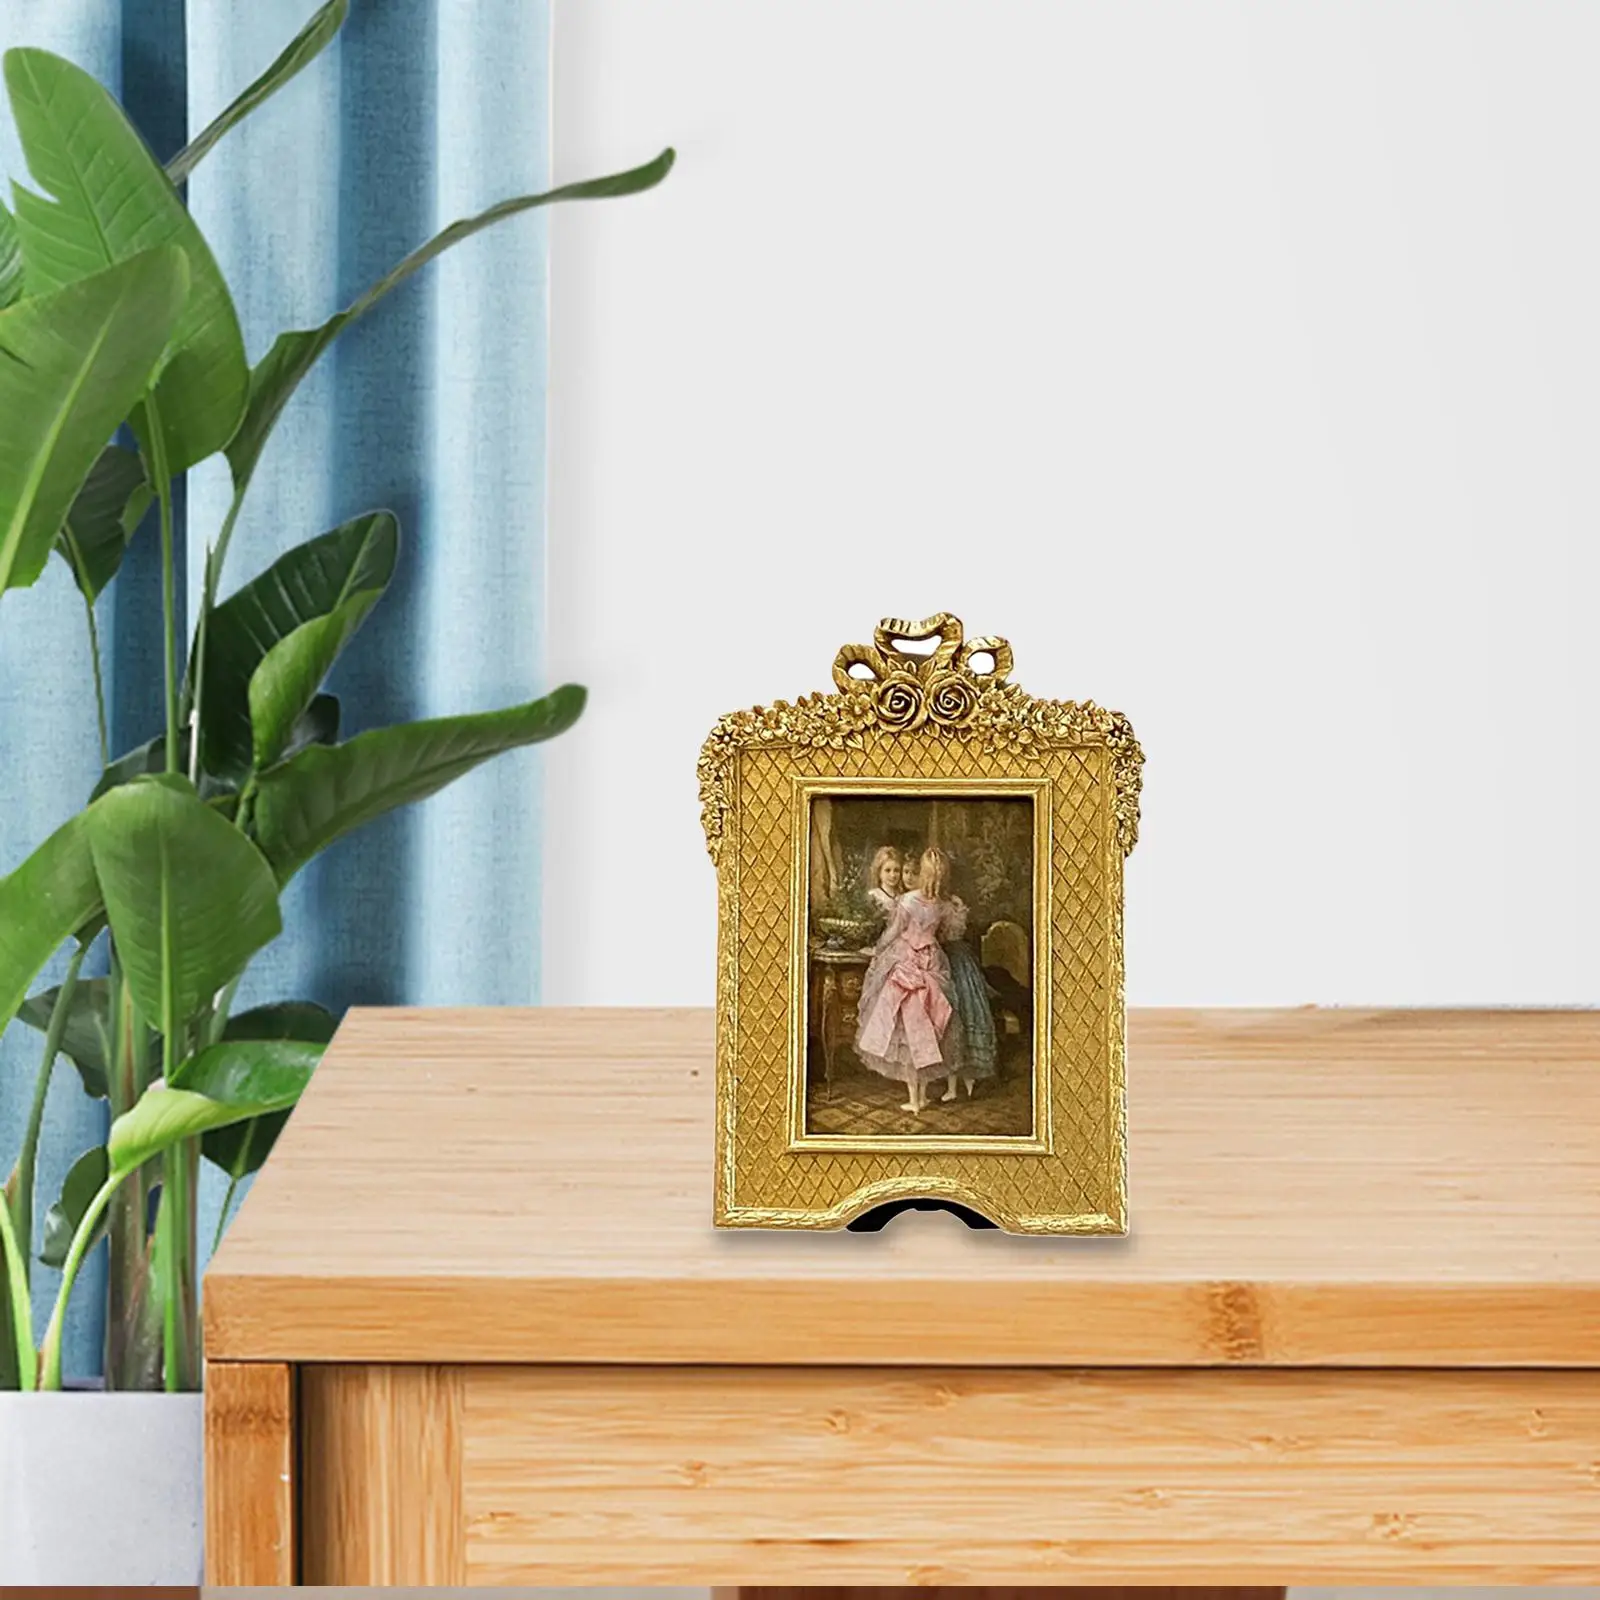 Elegant Photo Display Frame Desktop Home Decor Ornate Rectangle for Living Farmhouse Gift Wedding